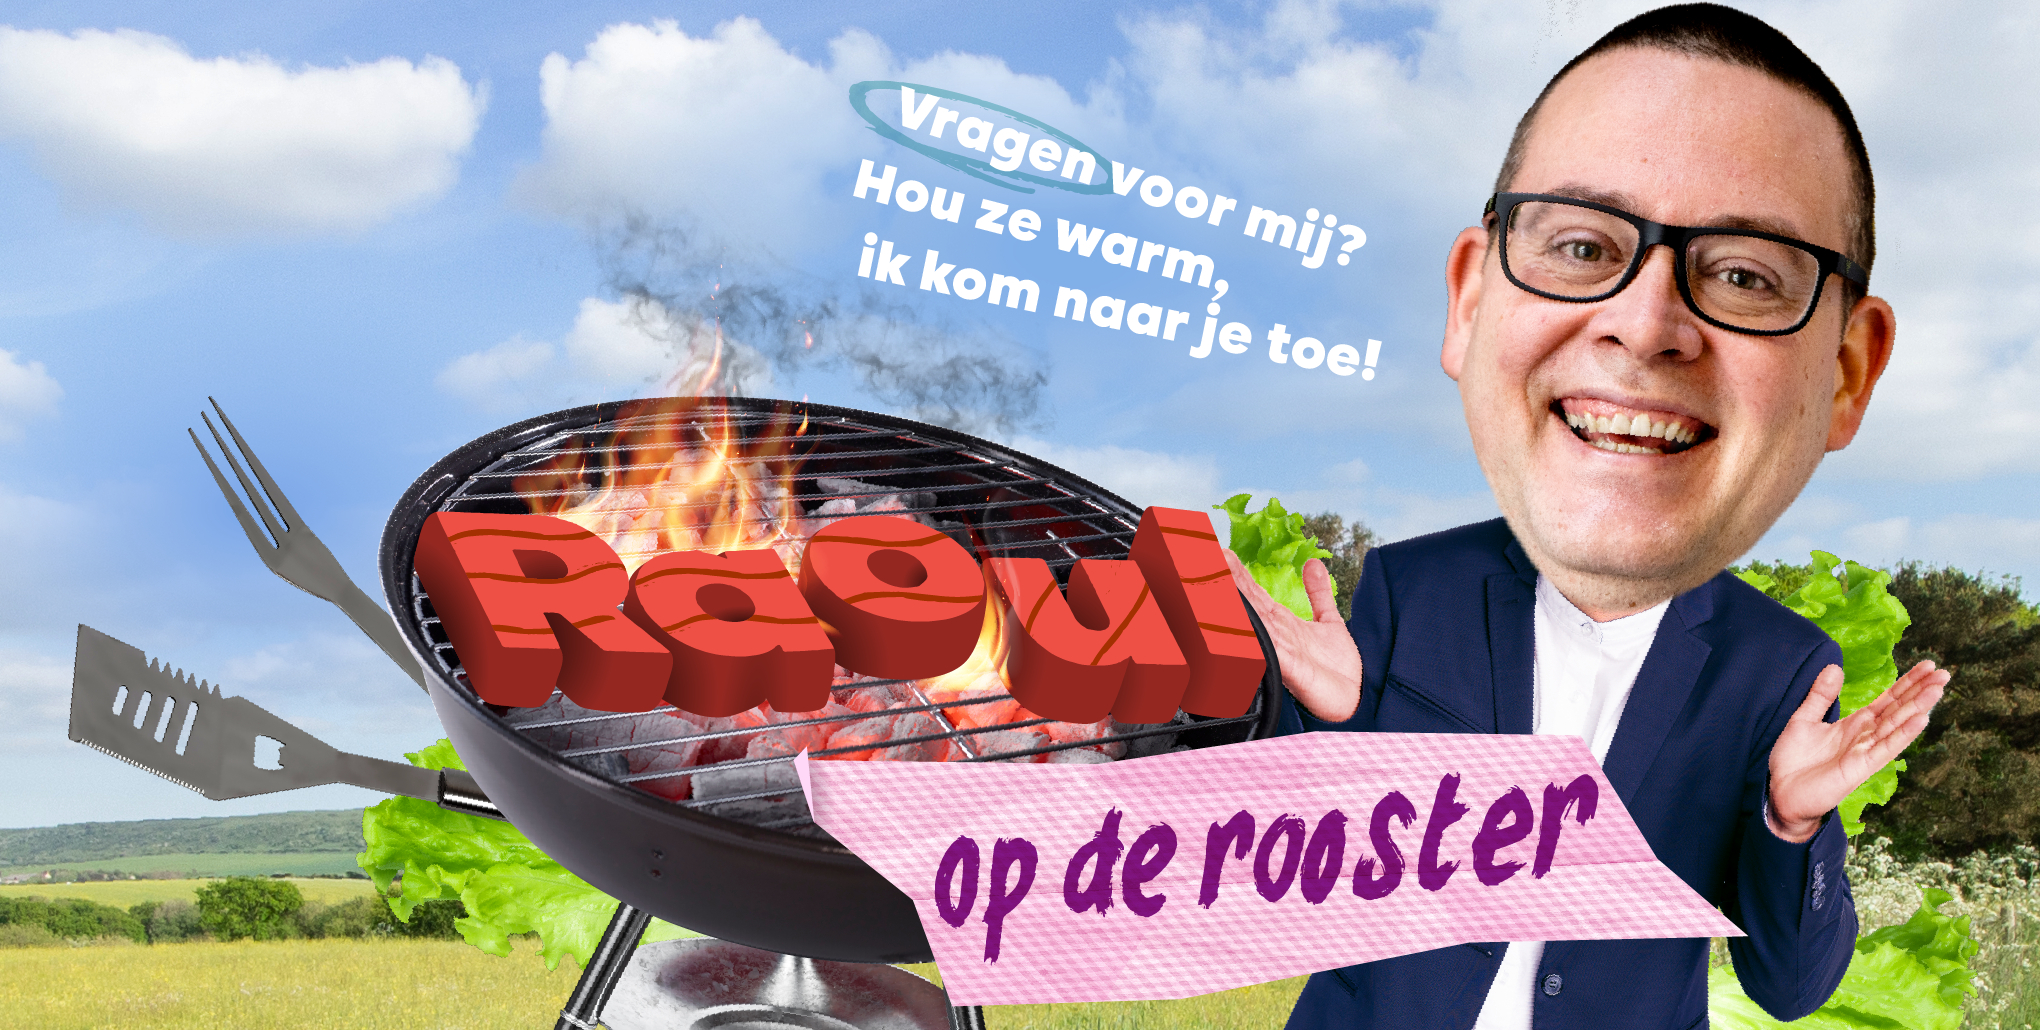 Raoul Op De Rooster